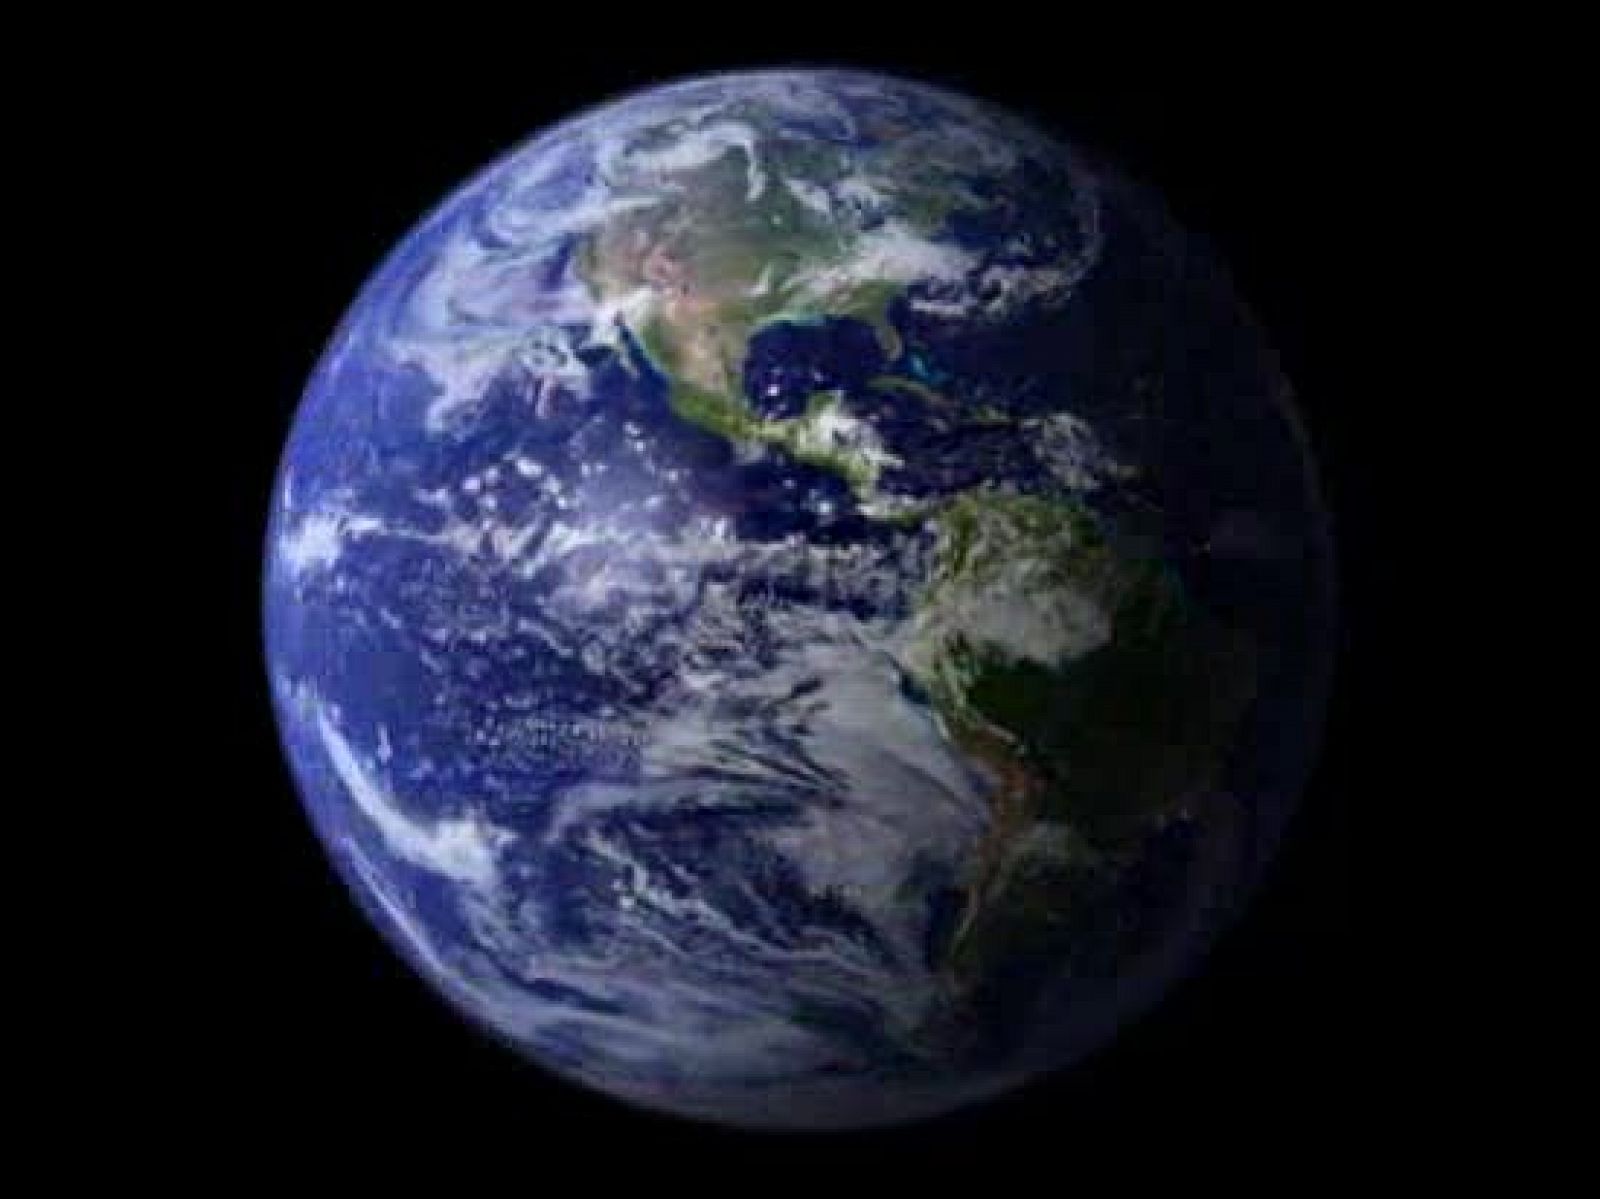 La NASA ha revelado a través de la cuenta de Flickr del Goddard Space Flight Center una serie de imágenes de nuestro planeta como nunca antes la habíamos visto.